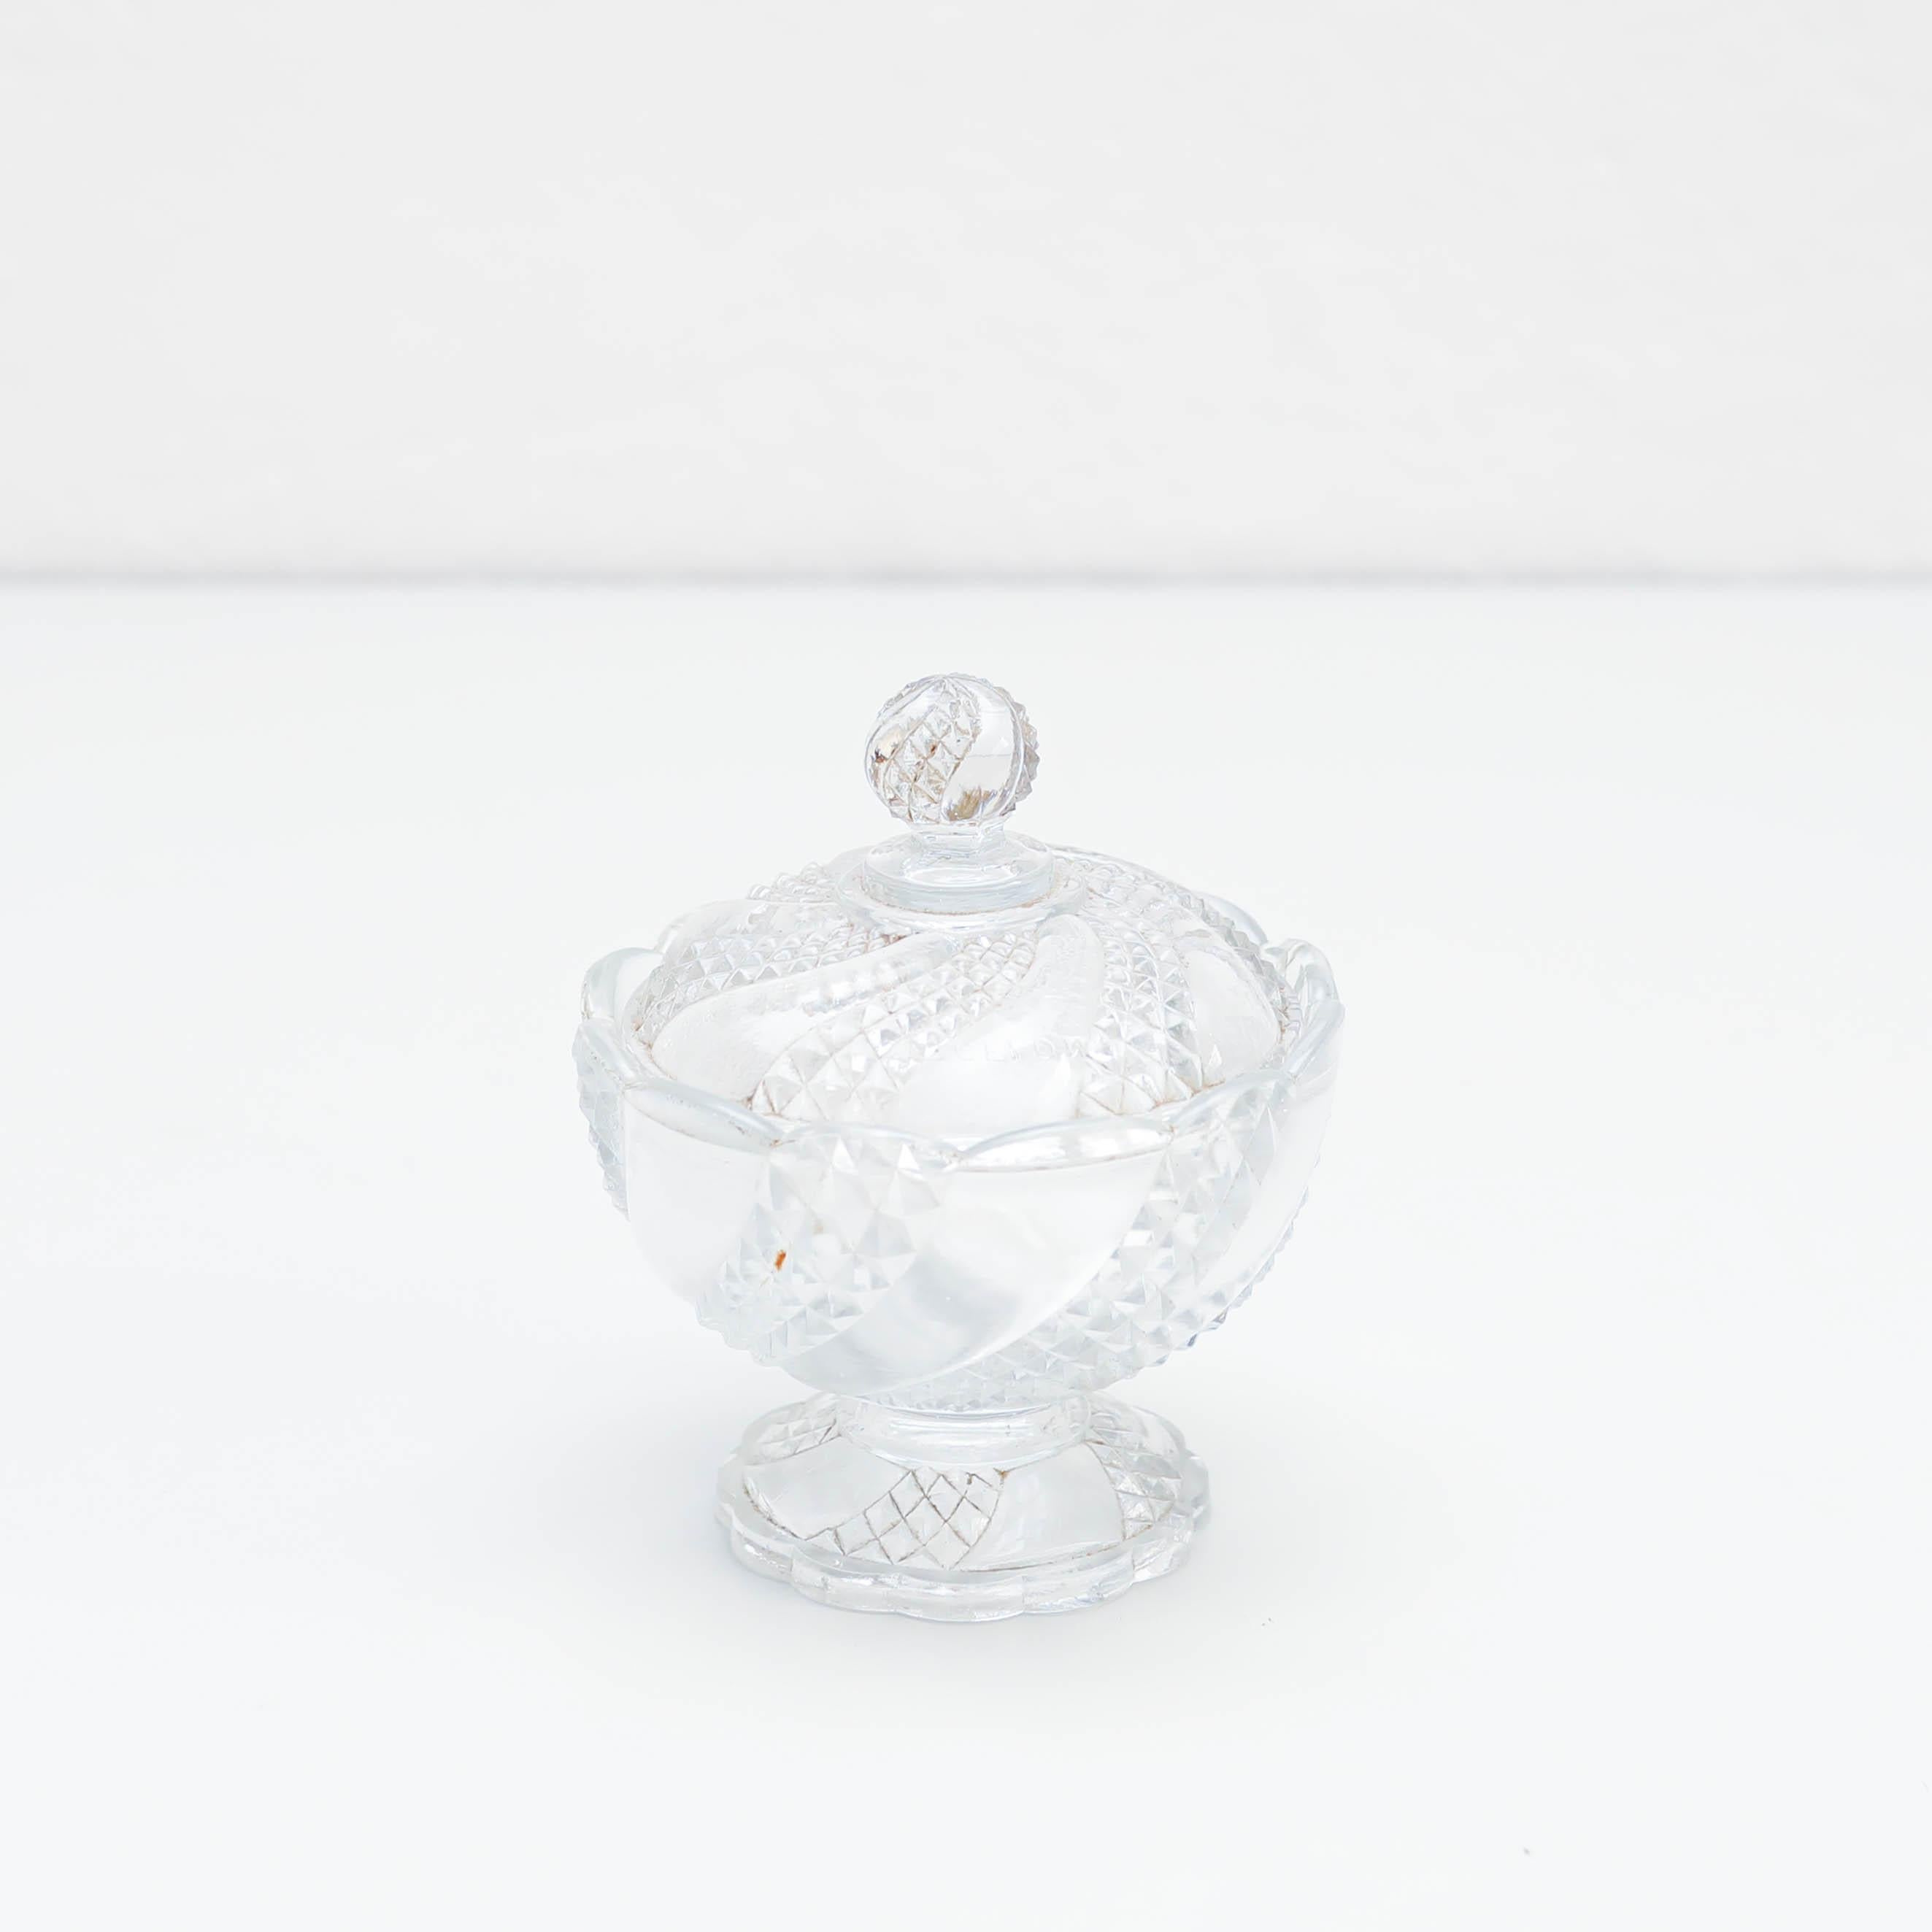 Sucrier en cristal, vers 1920
Fabriqué à Barcelone, Espagne.

En état d'origine, avec une usure correspondant à l'âge et à l'utilisation, préservant une belle patine.

Matériau :
Cristal

Dimensions :
H 15 cm x Ø 12 cm.
 